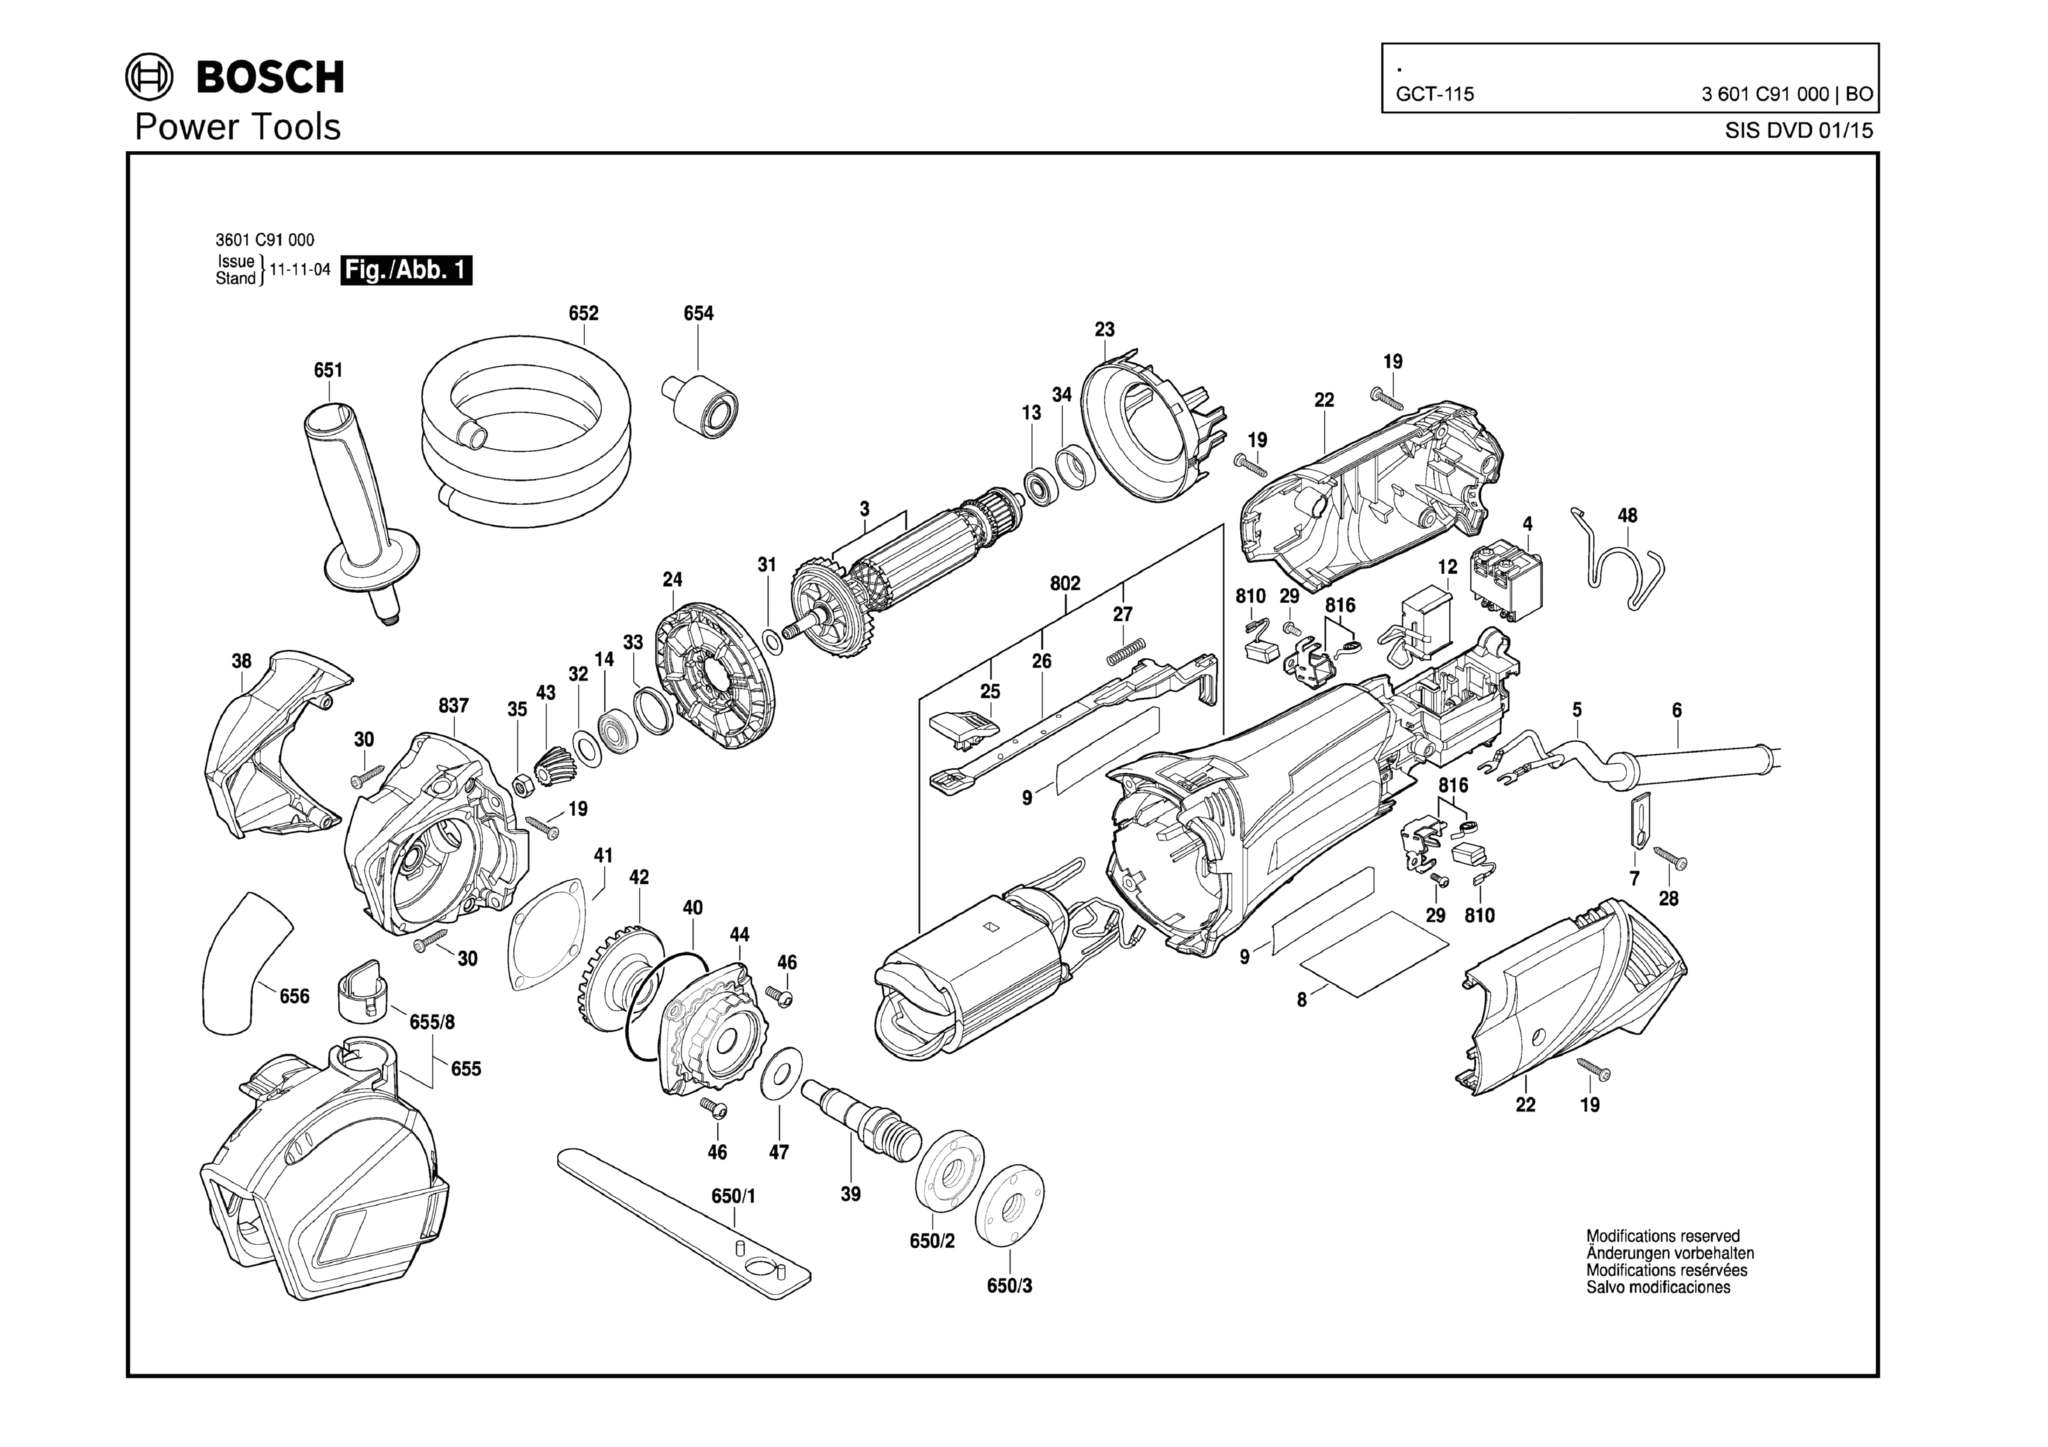 Запчасти, схема и деталировка Bosch GCT-115 (ТИП 3601C91000)